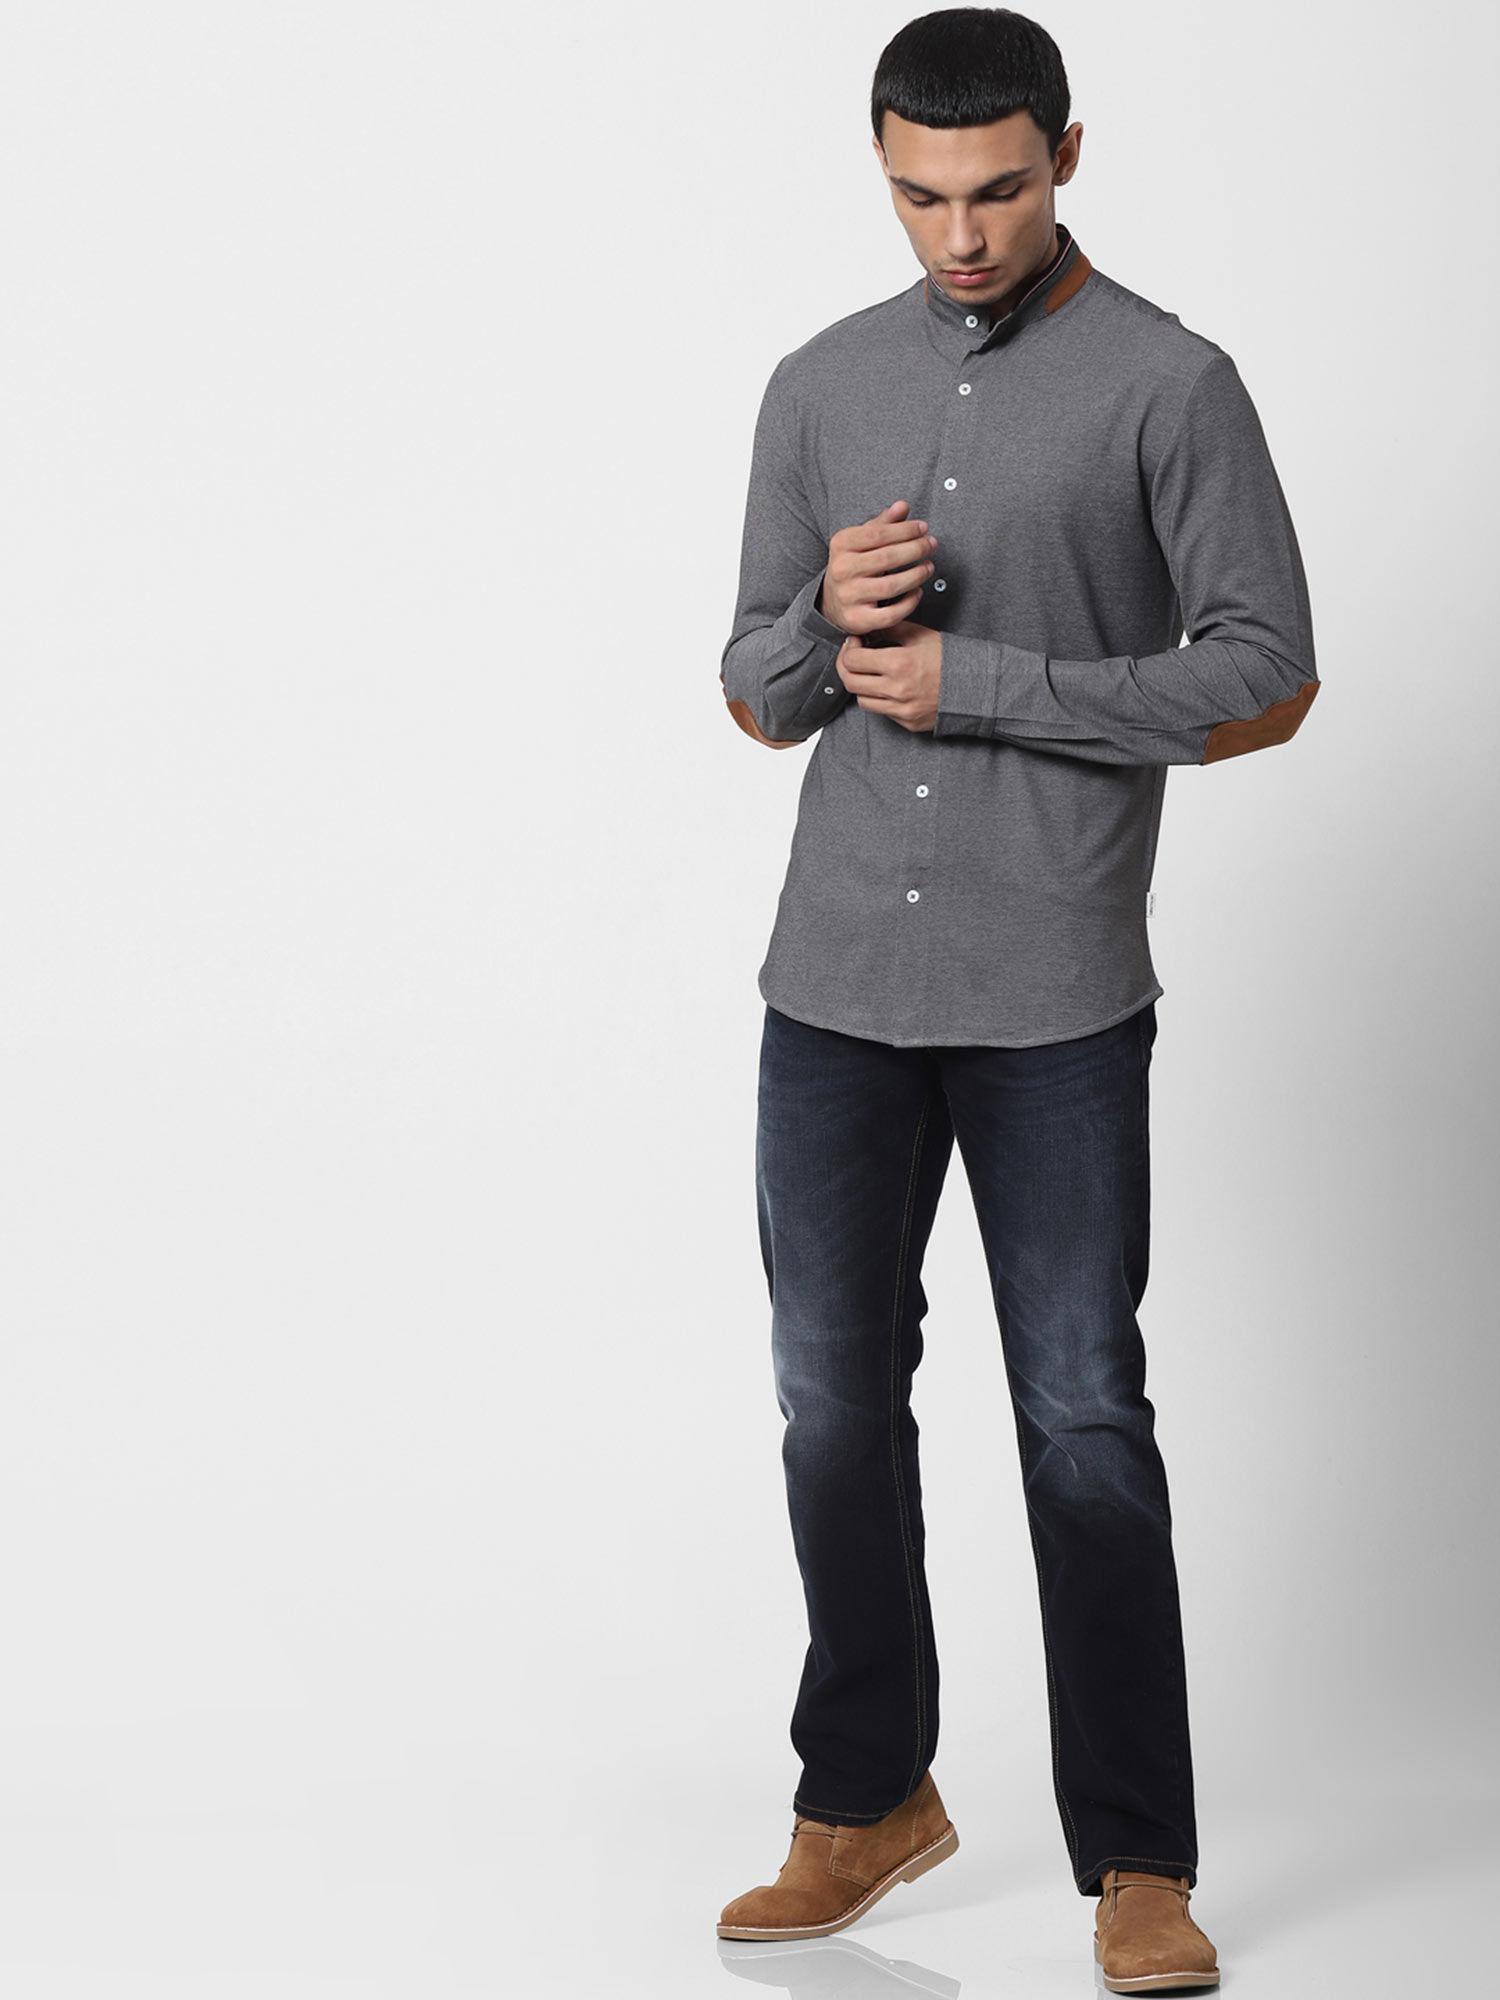 grey mandarin collar full sleeves shirt